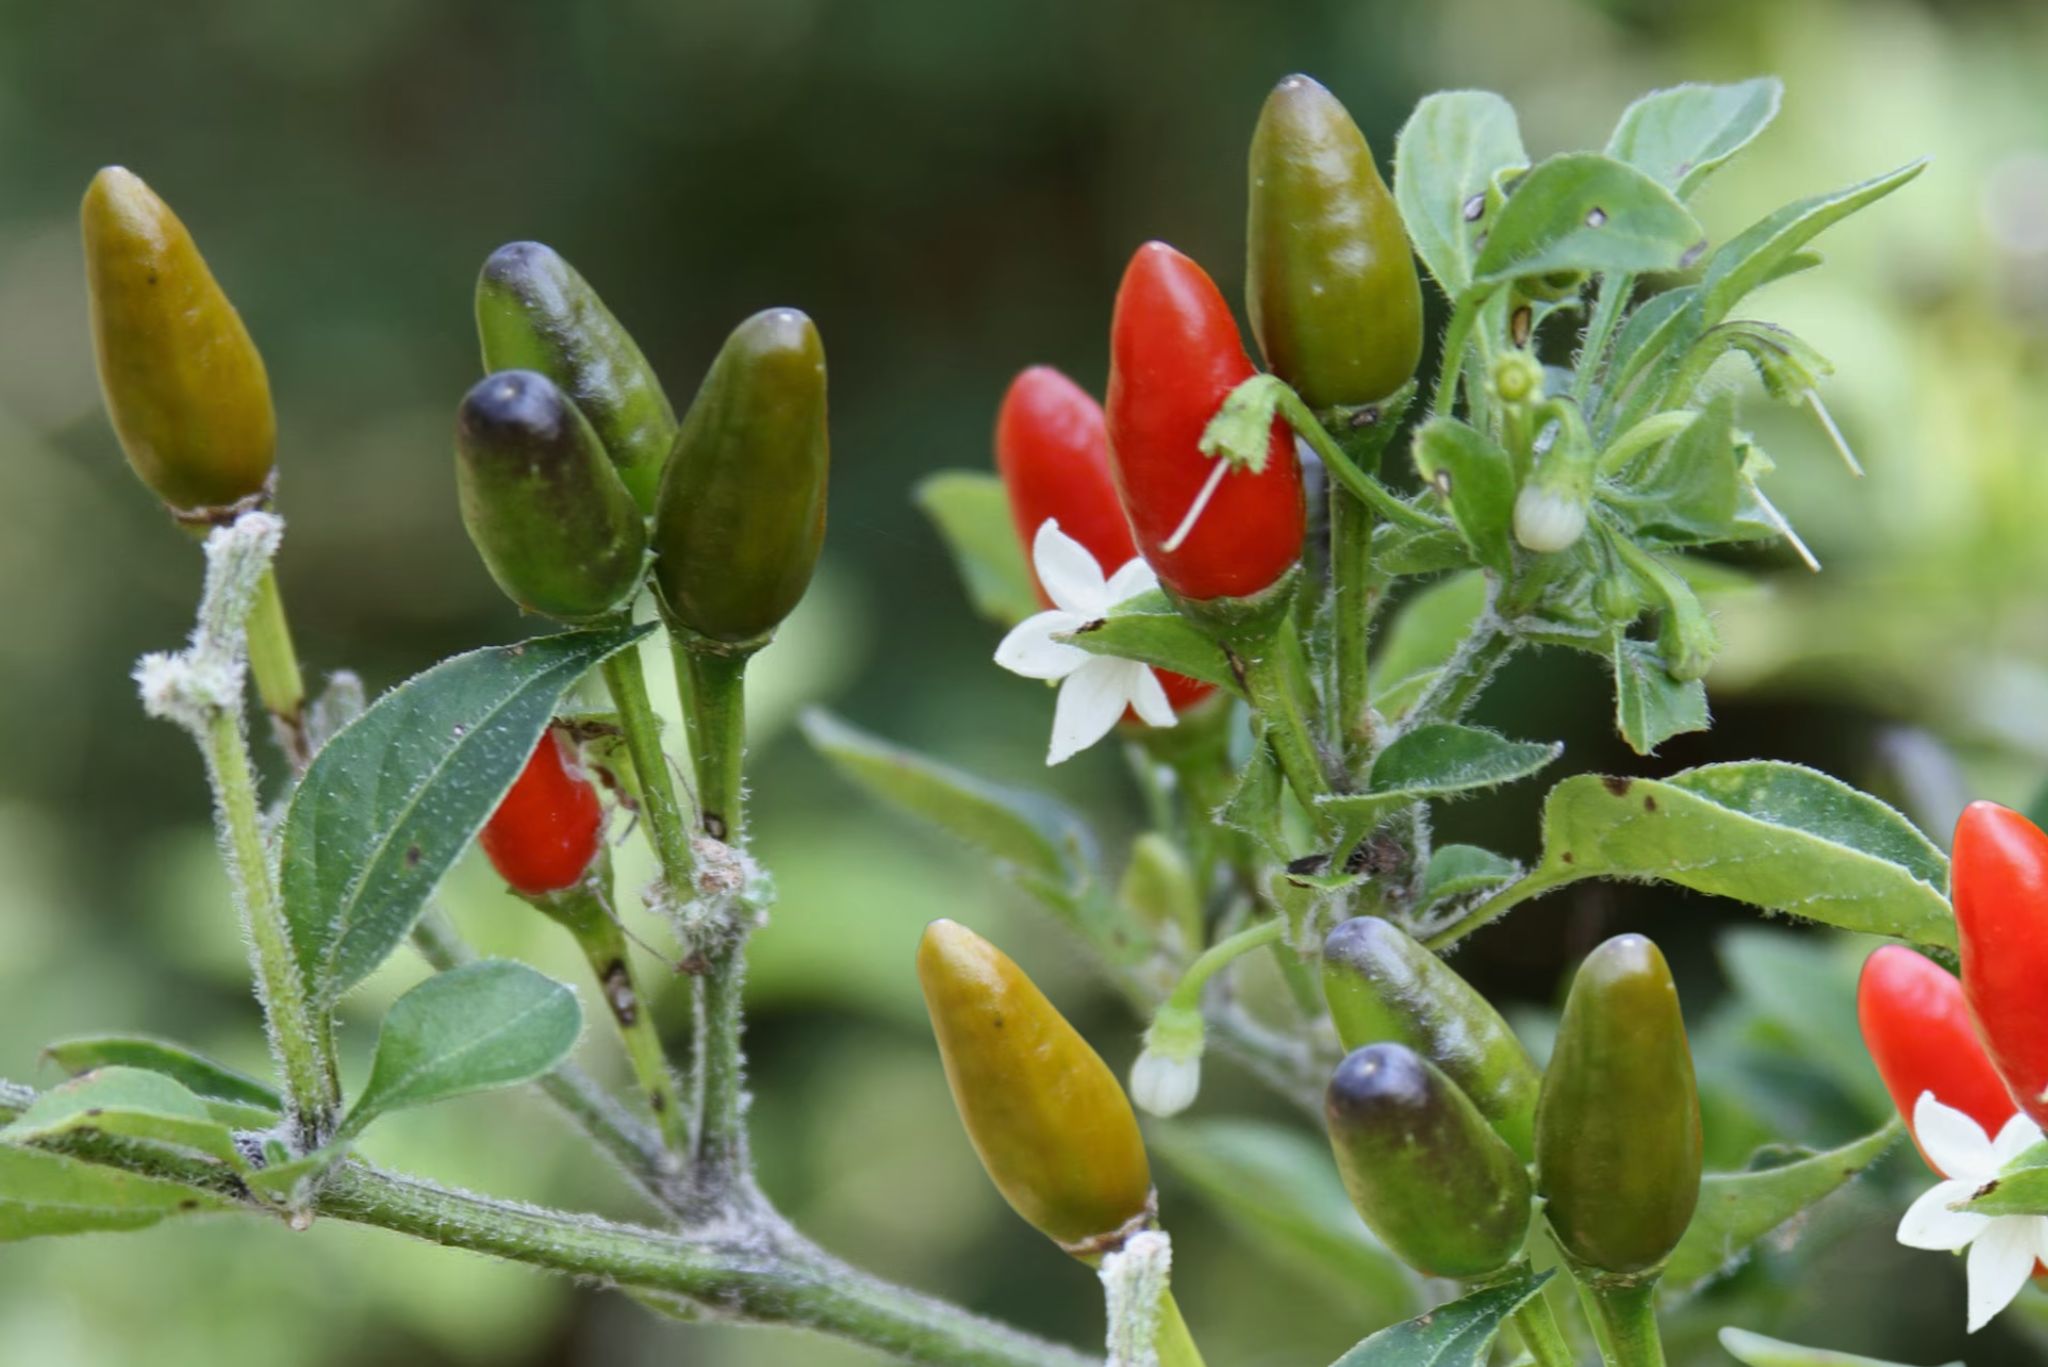 Pequin pepper plant